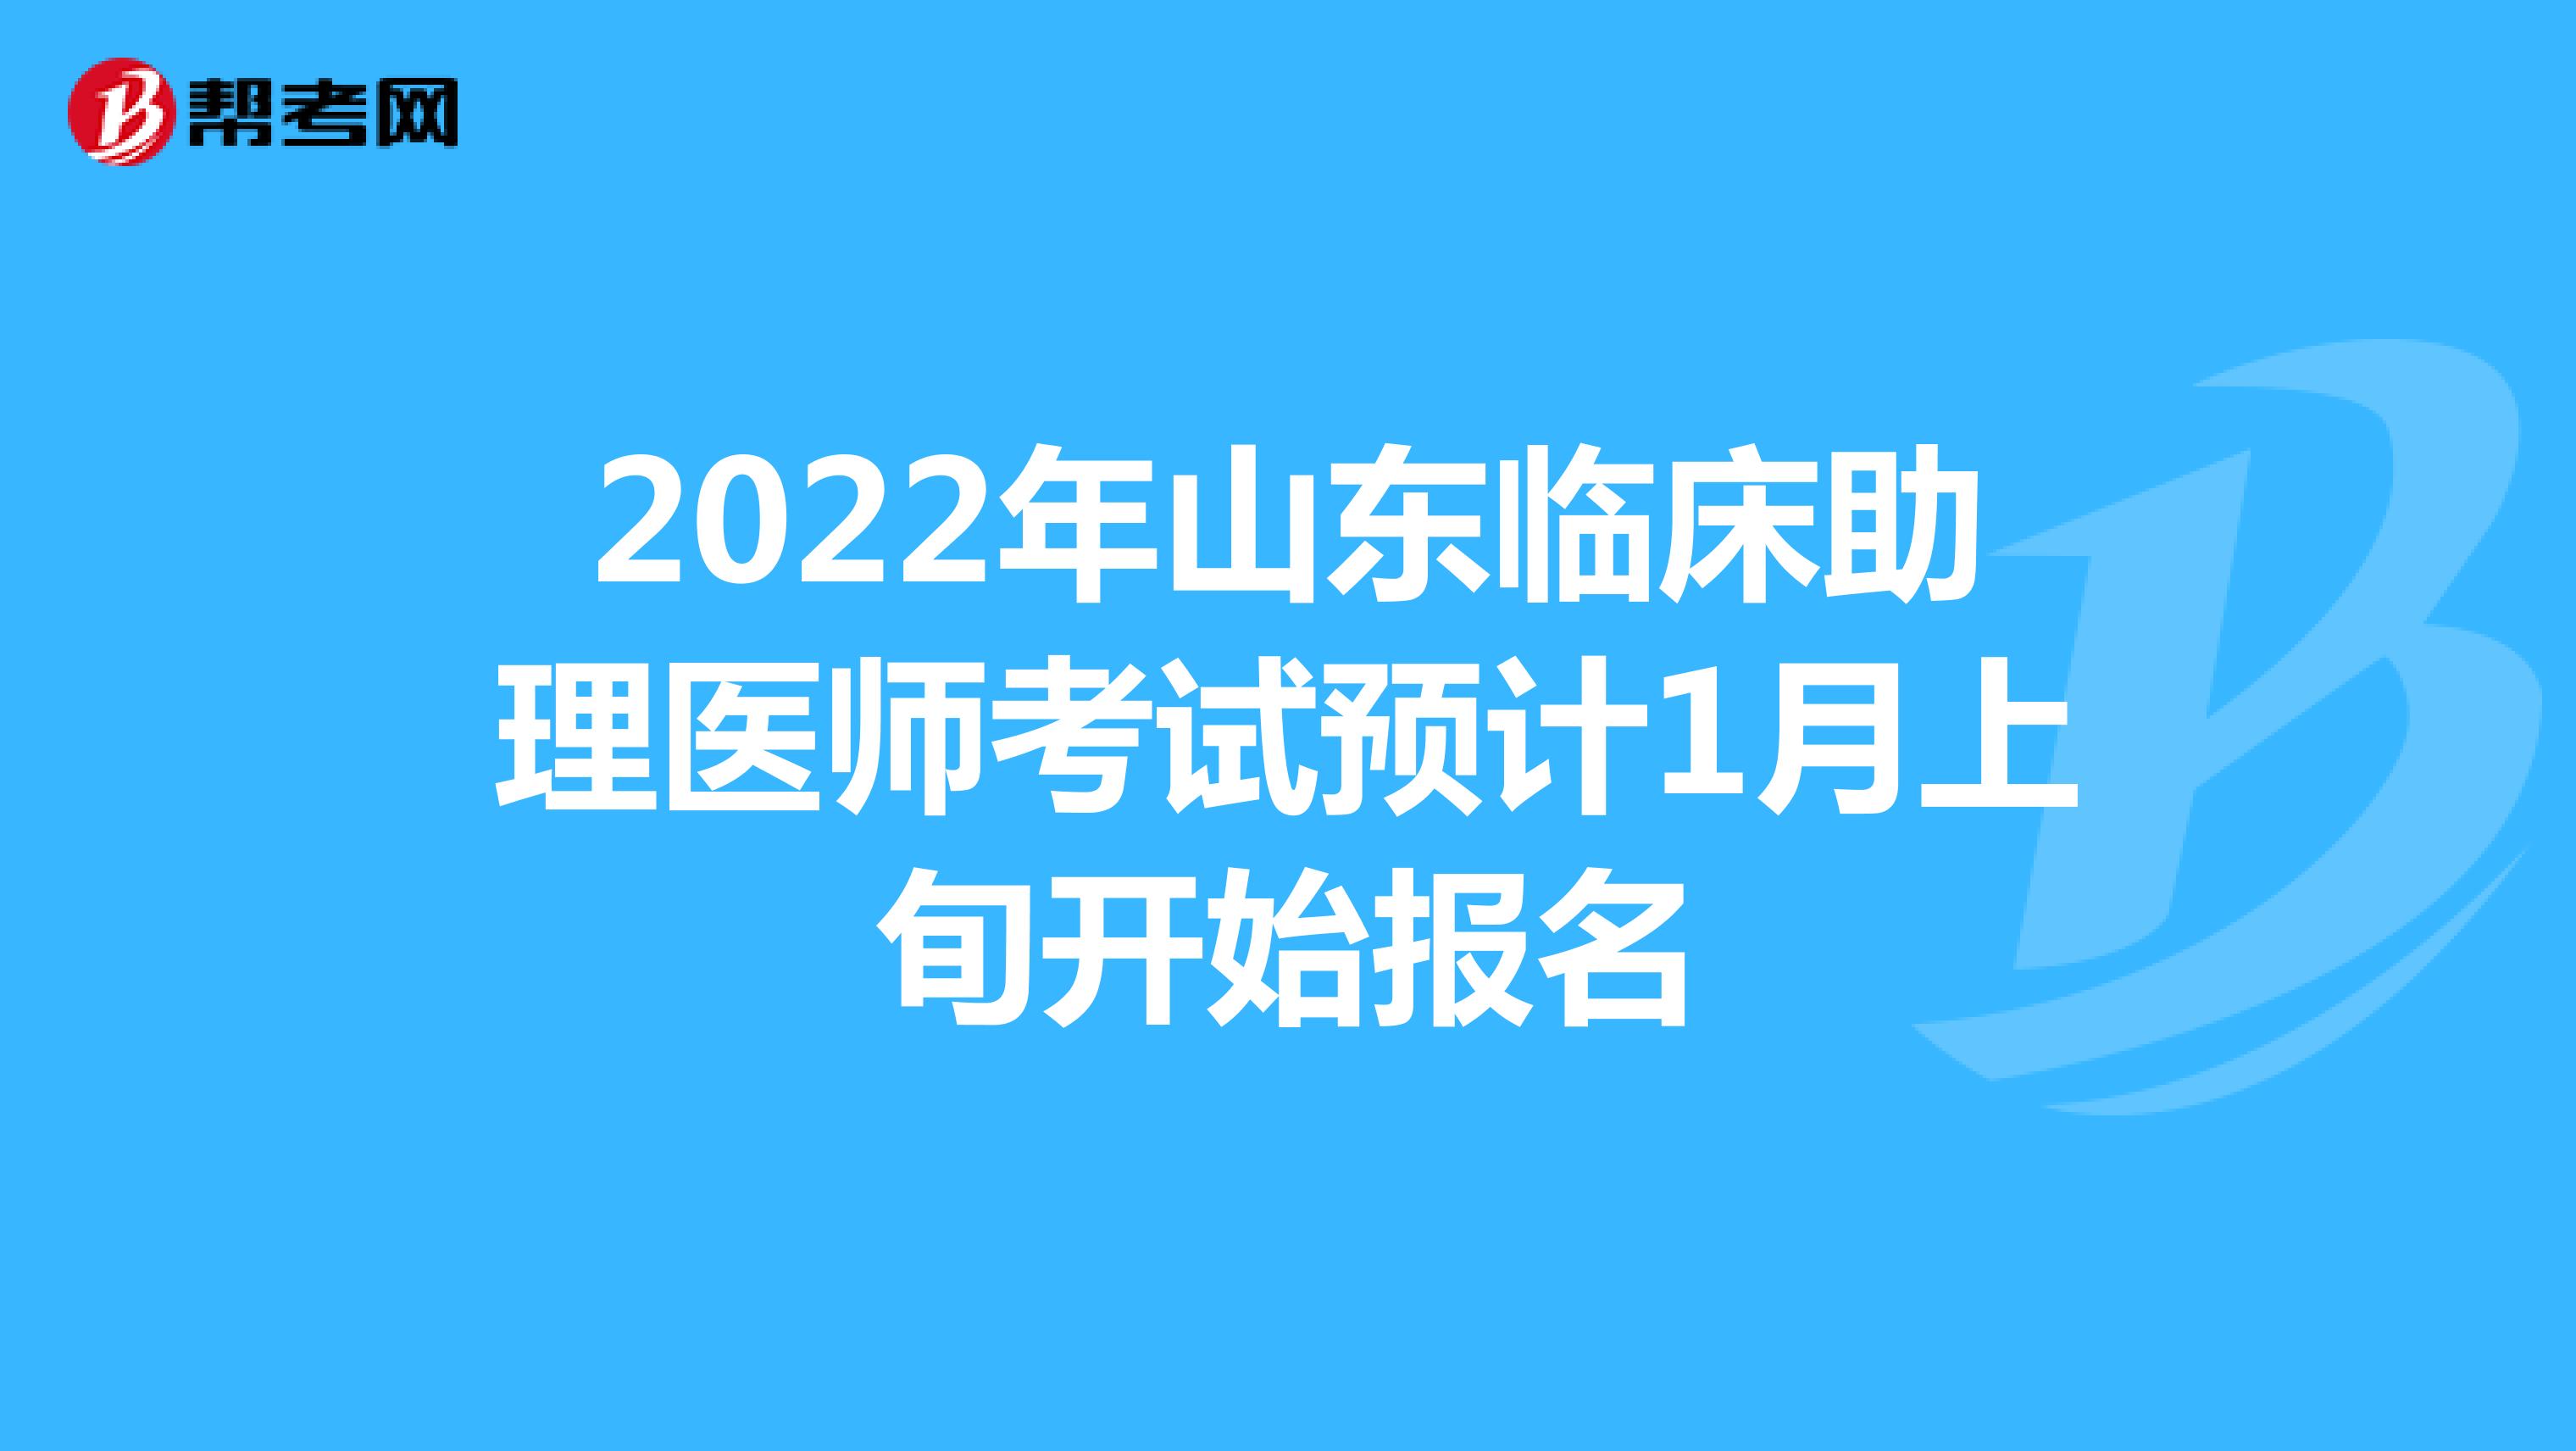 2022年山东临床助理医师考试预计1月上旬开始报名